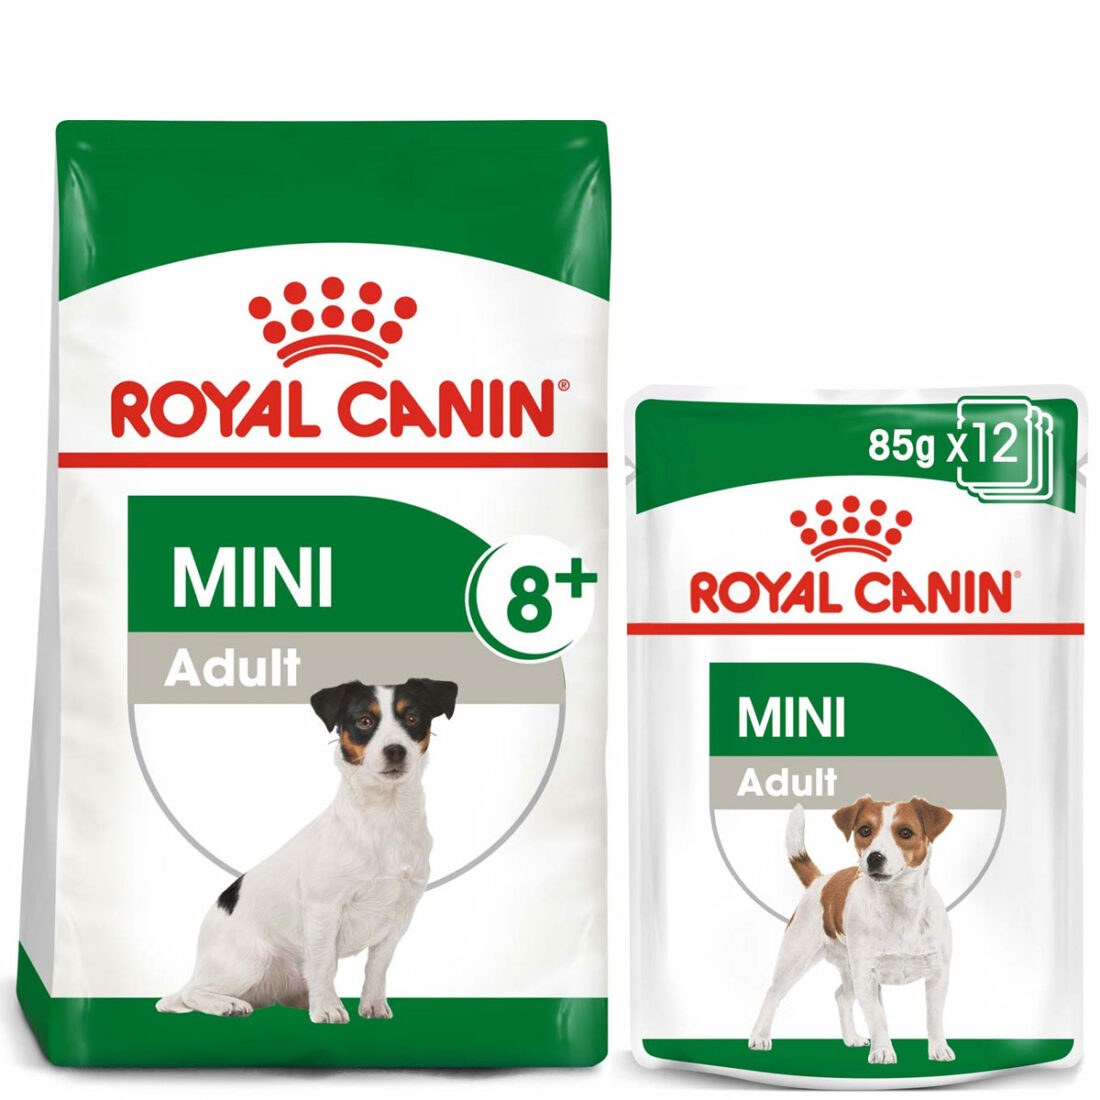 ROYAL CANIN MINI Adult 8+ 2 kg + Mini